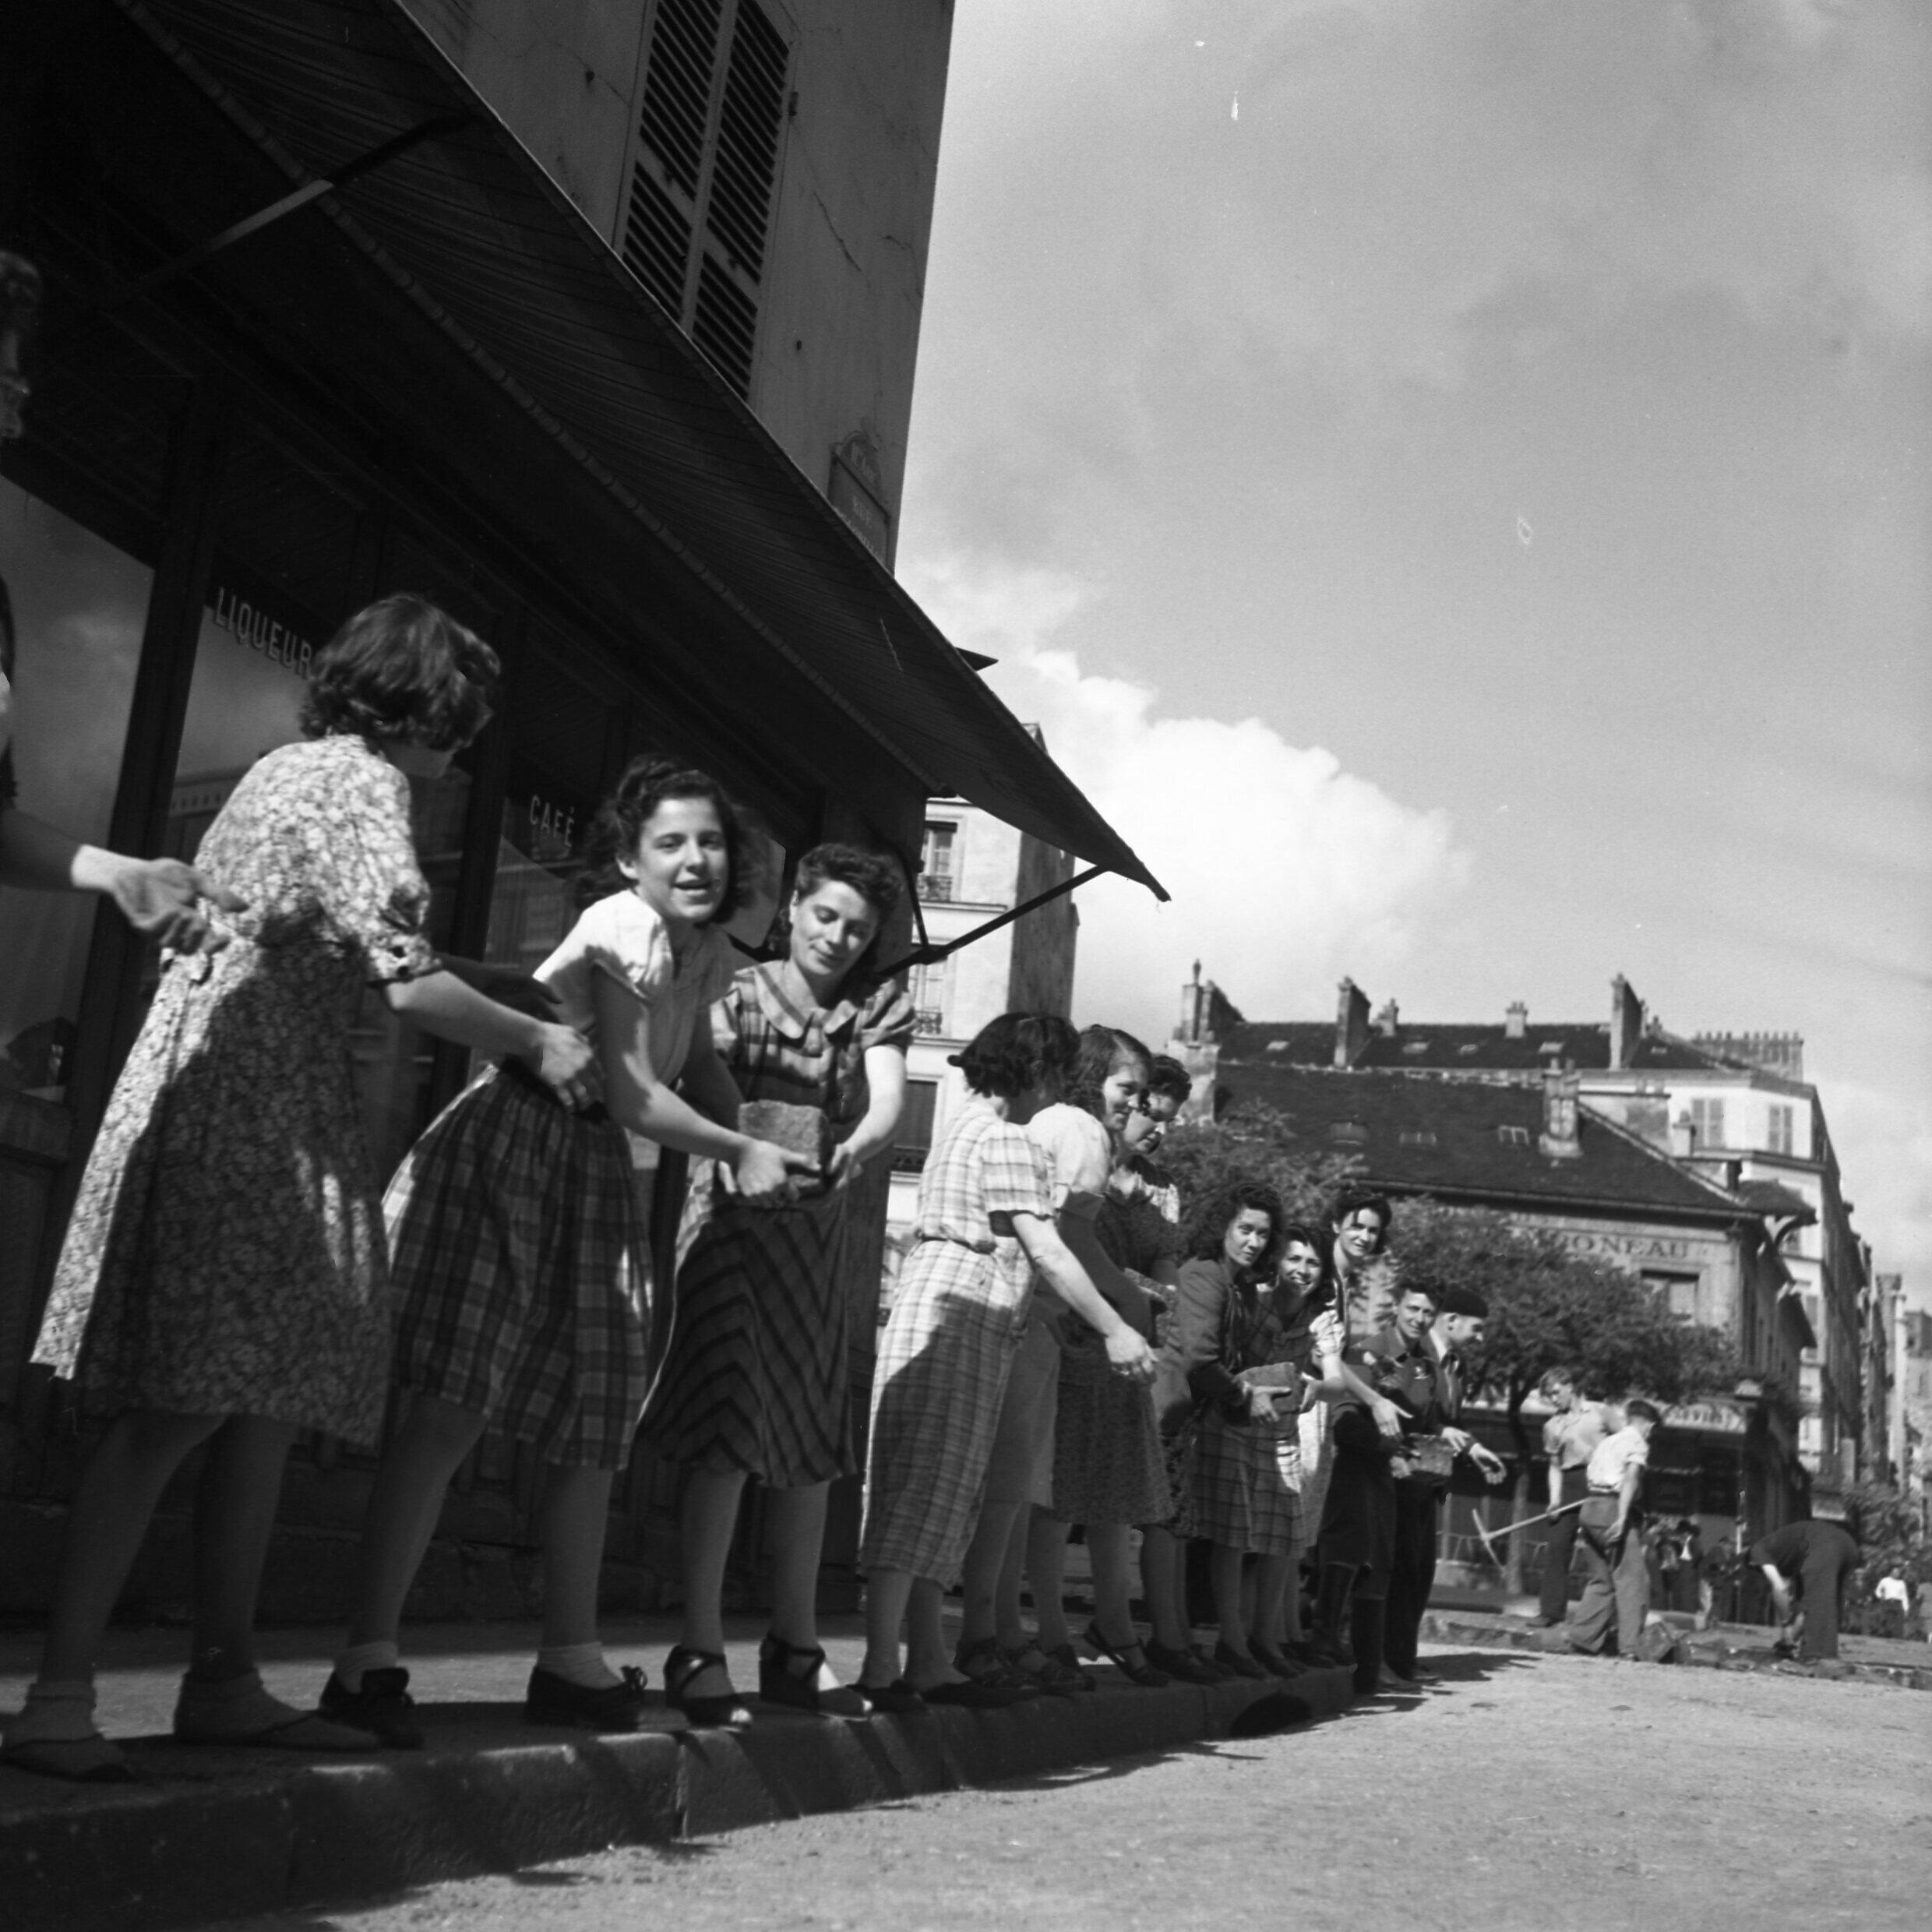 Frauen bauen im August 1944 während des Pariser Aufstands in Ménilmontant eine Barrikade |  AAMRN-Sammlung, Museum des nationalen Widerstands in Champigny-sur-Marne.